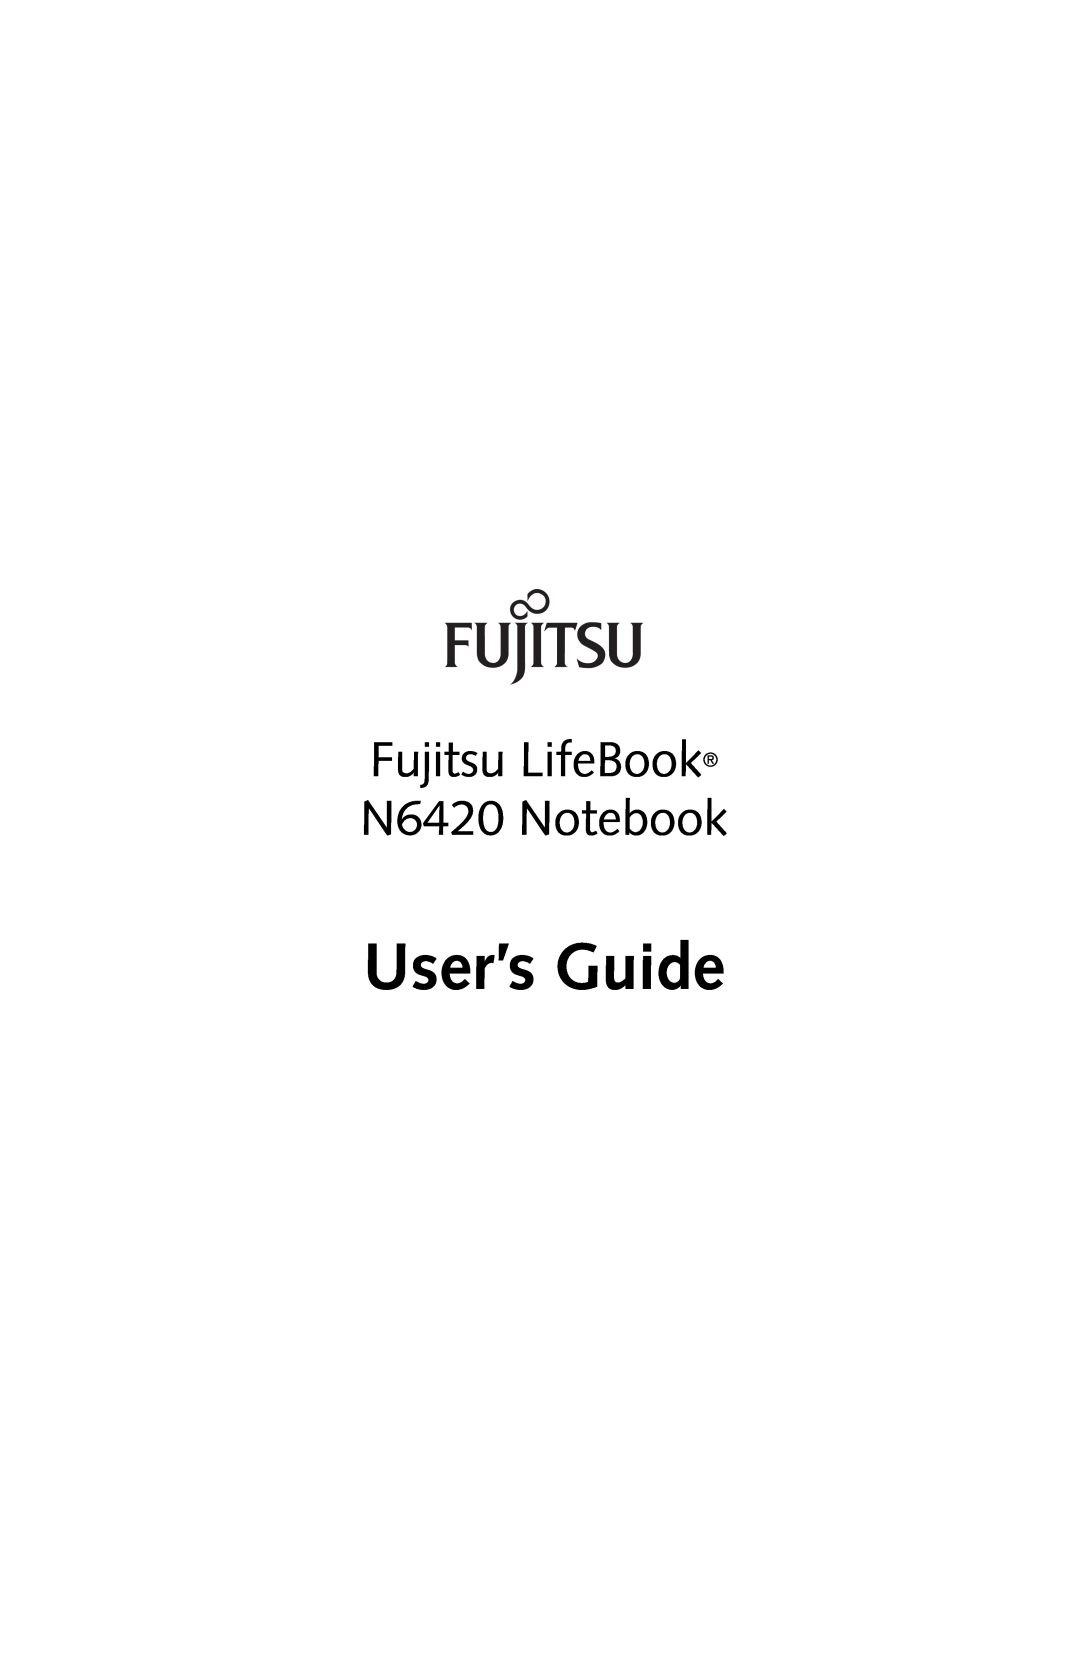 Fujitsu manual User’s Guide, Fujitsu LifeBook N6420 Notebook 